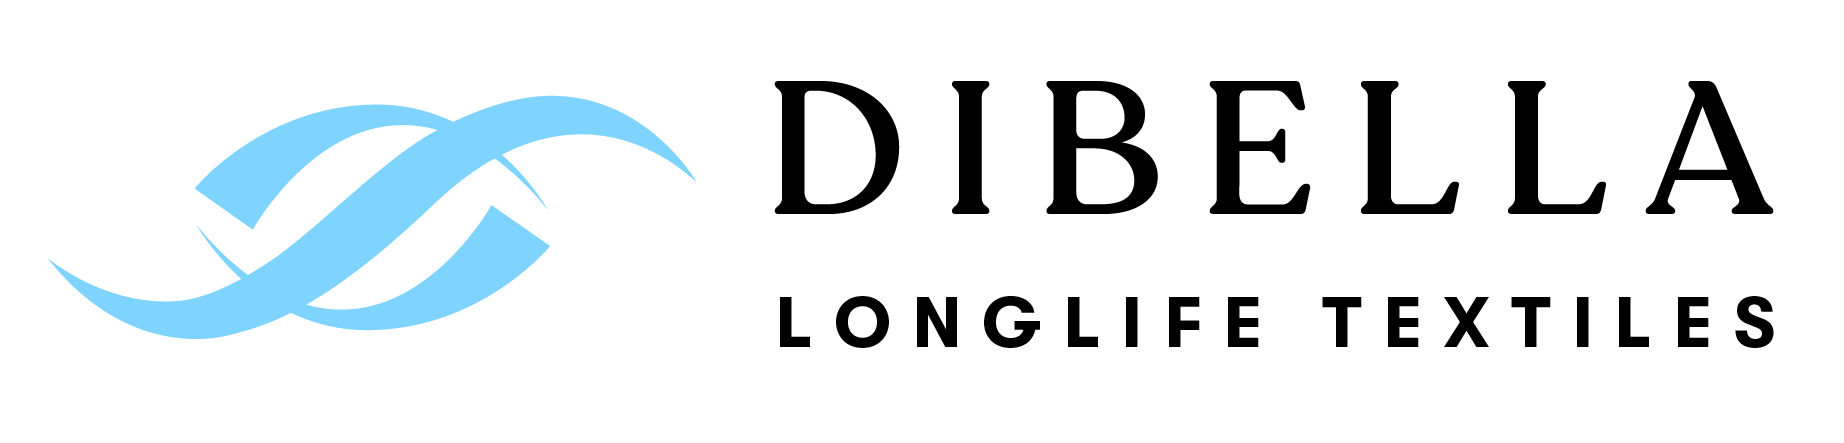 Dibella - longlife textiles